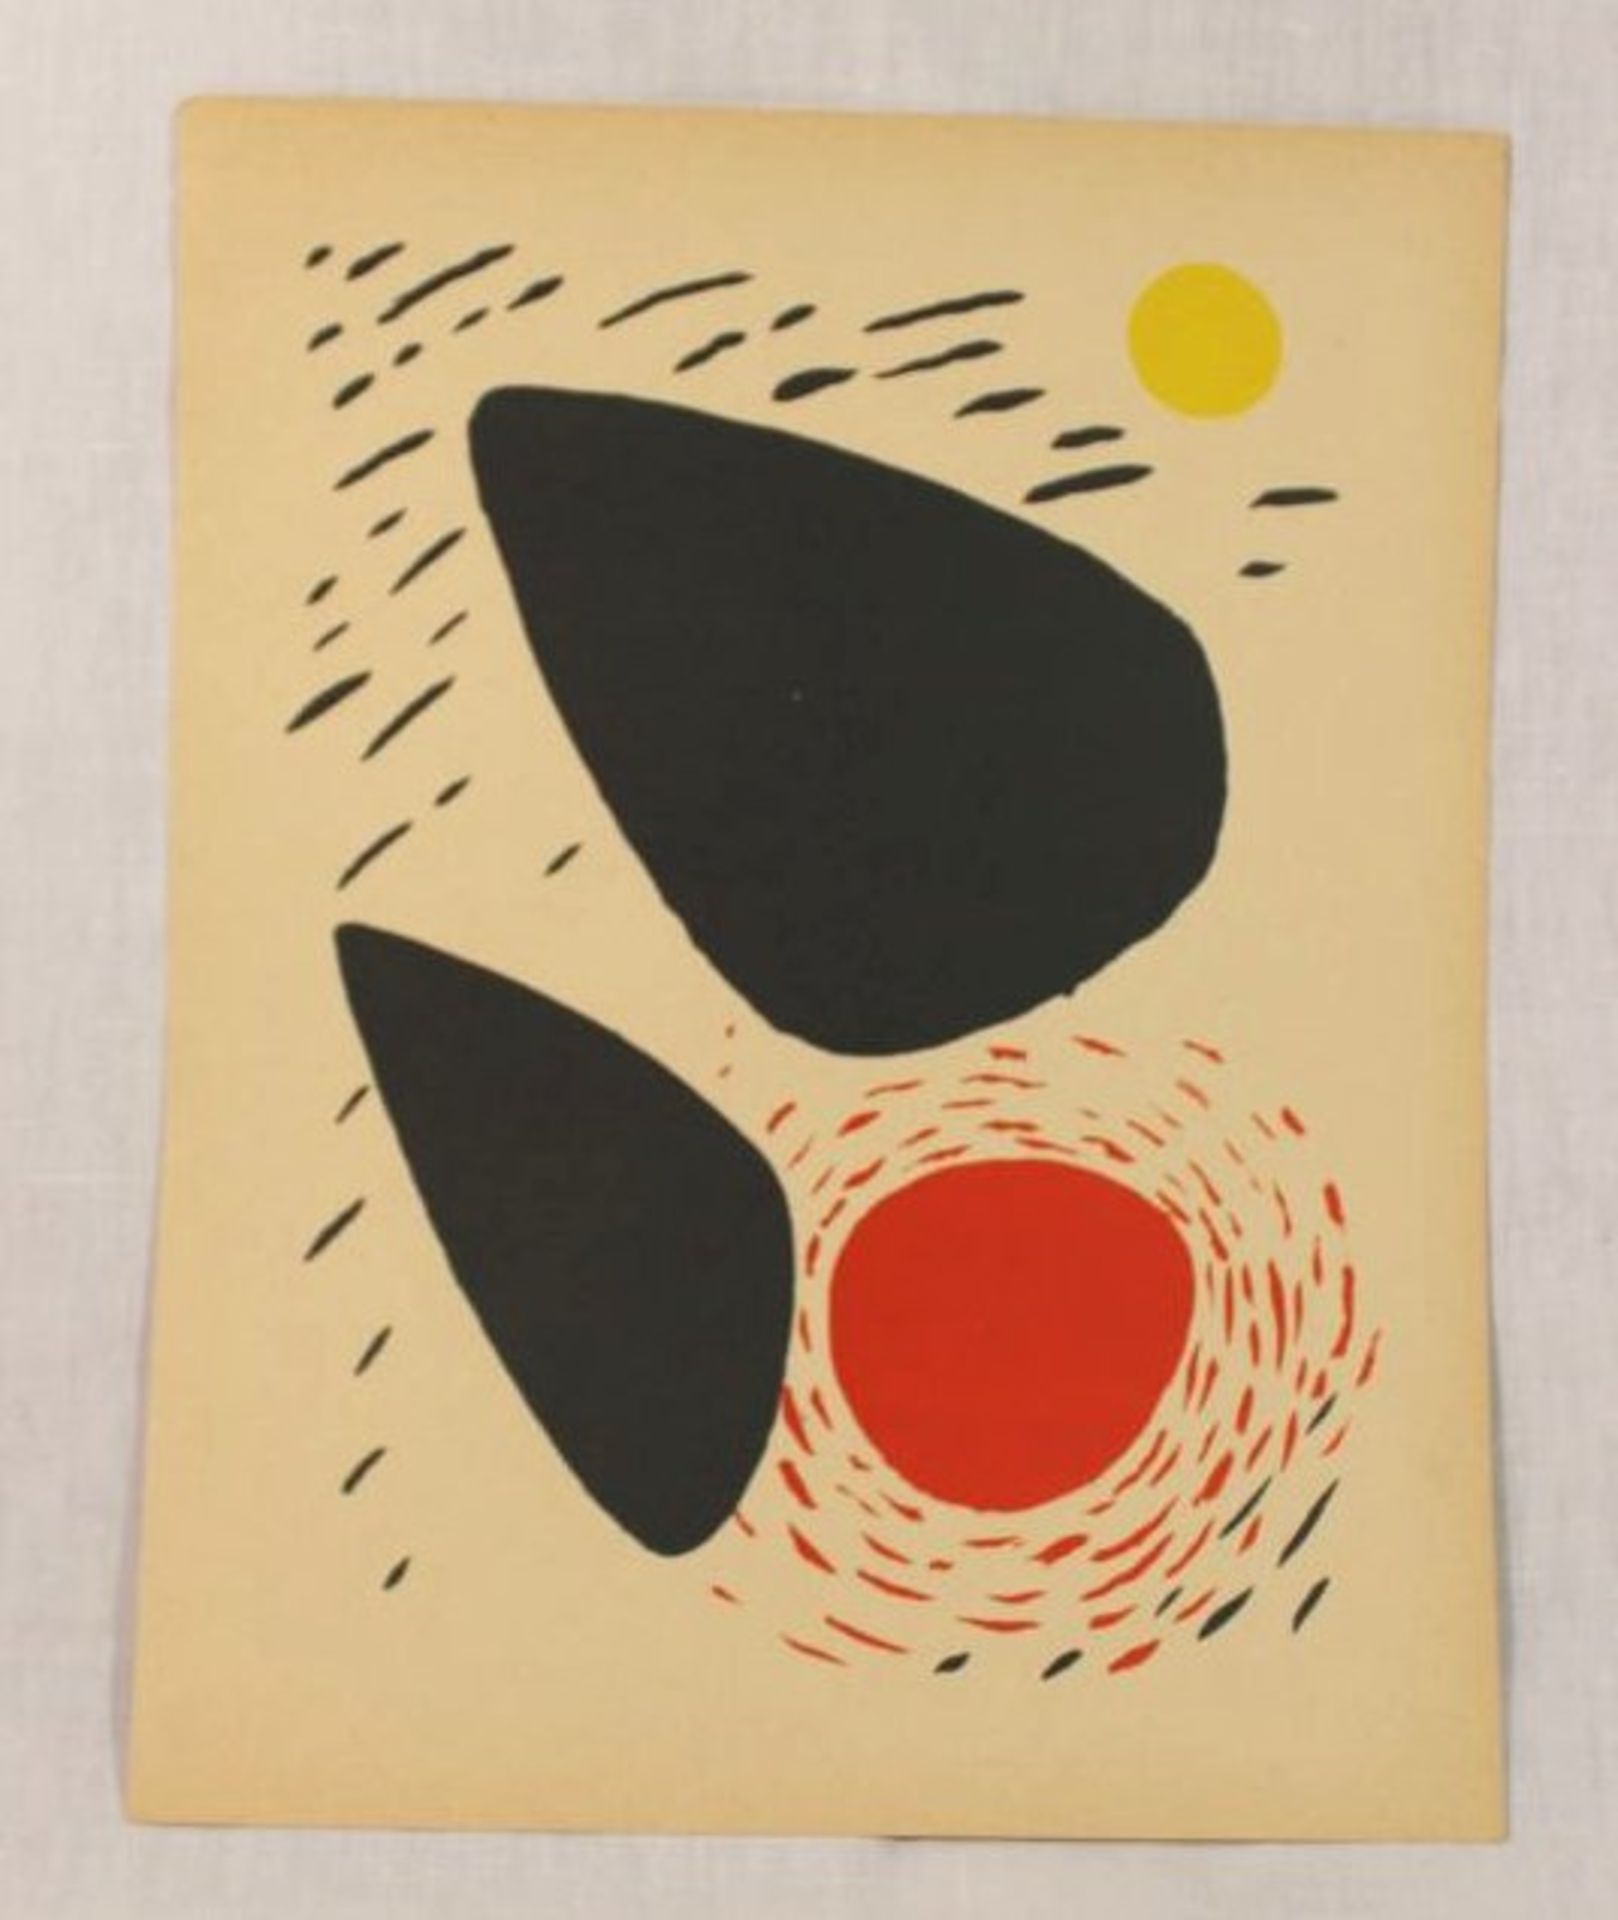 Alexander CALDER (1898-1976), Lithographie, ungerahmt, verso von fremder Hand beschriftet, BG 31,5 x